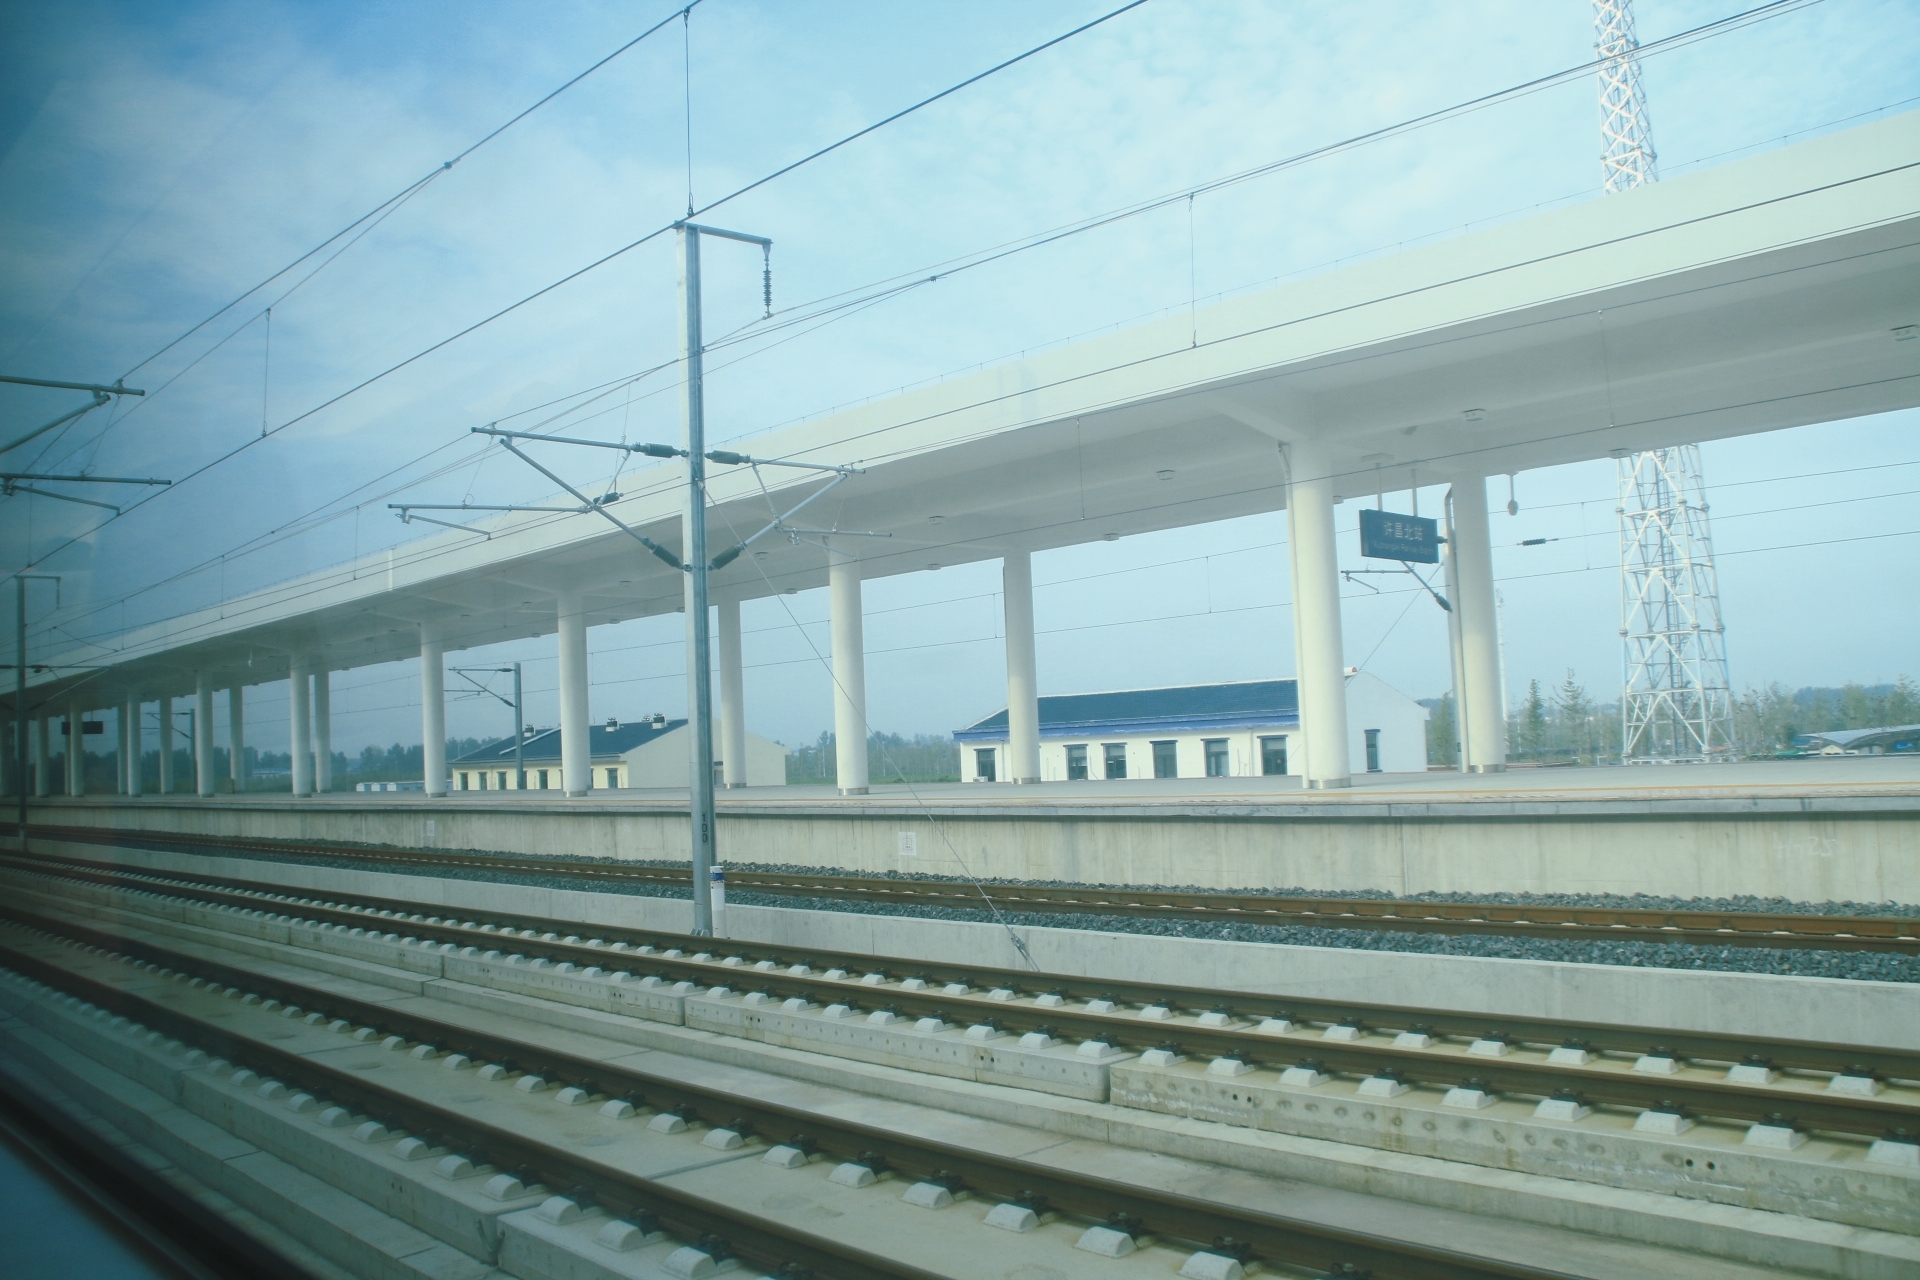 天津轨道交通Z2线一期工程全速建设中 正线全长约39.27公里